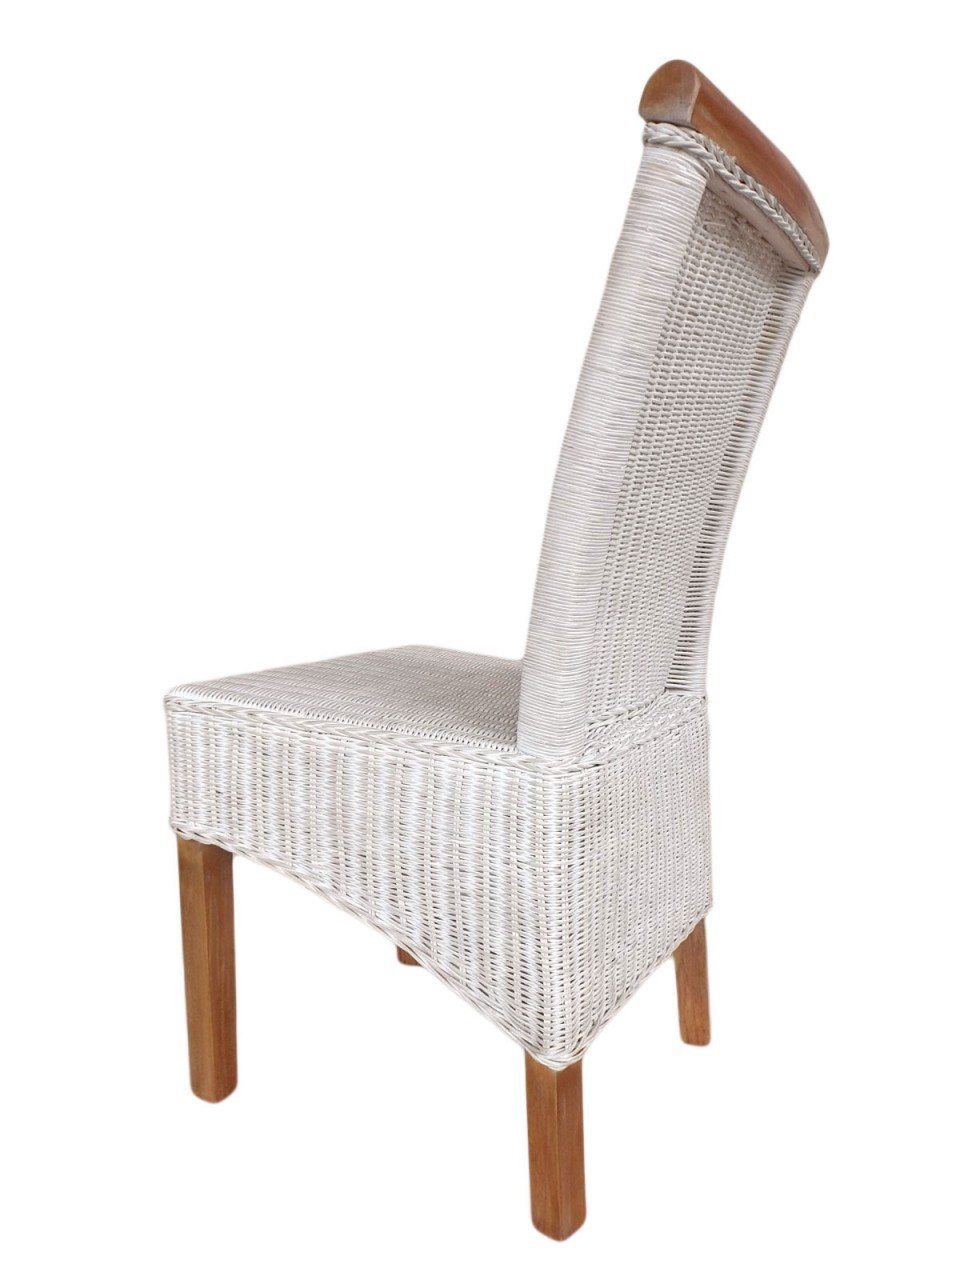 Esszimmer-Stuhl Perth weiß weiß, Sitzmöbel soma Sessel Stuhl Sitzkissen Sitzplatz Rattanstuhl Sessel Soma Leinen